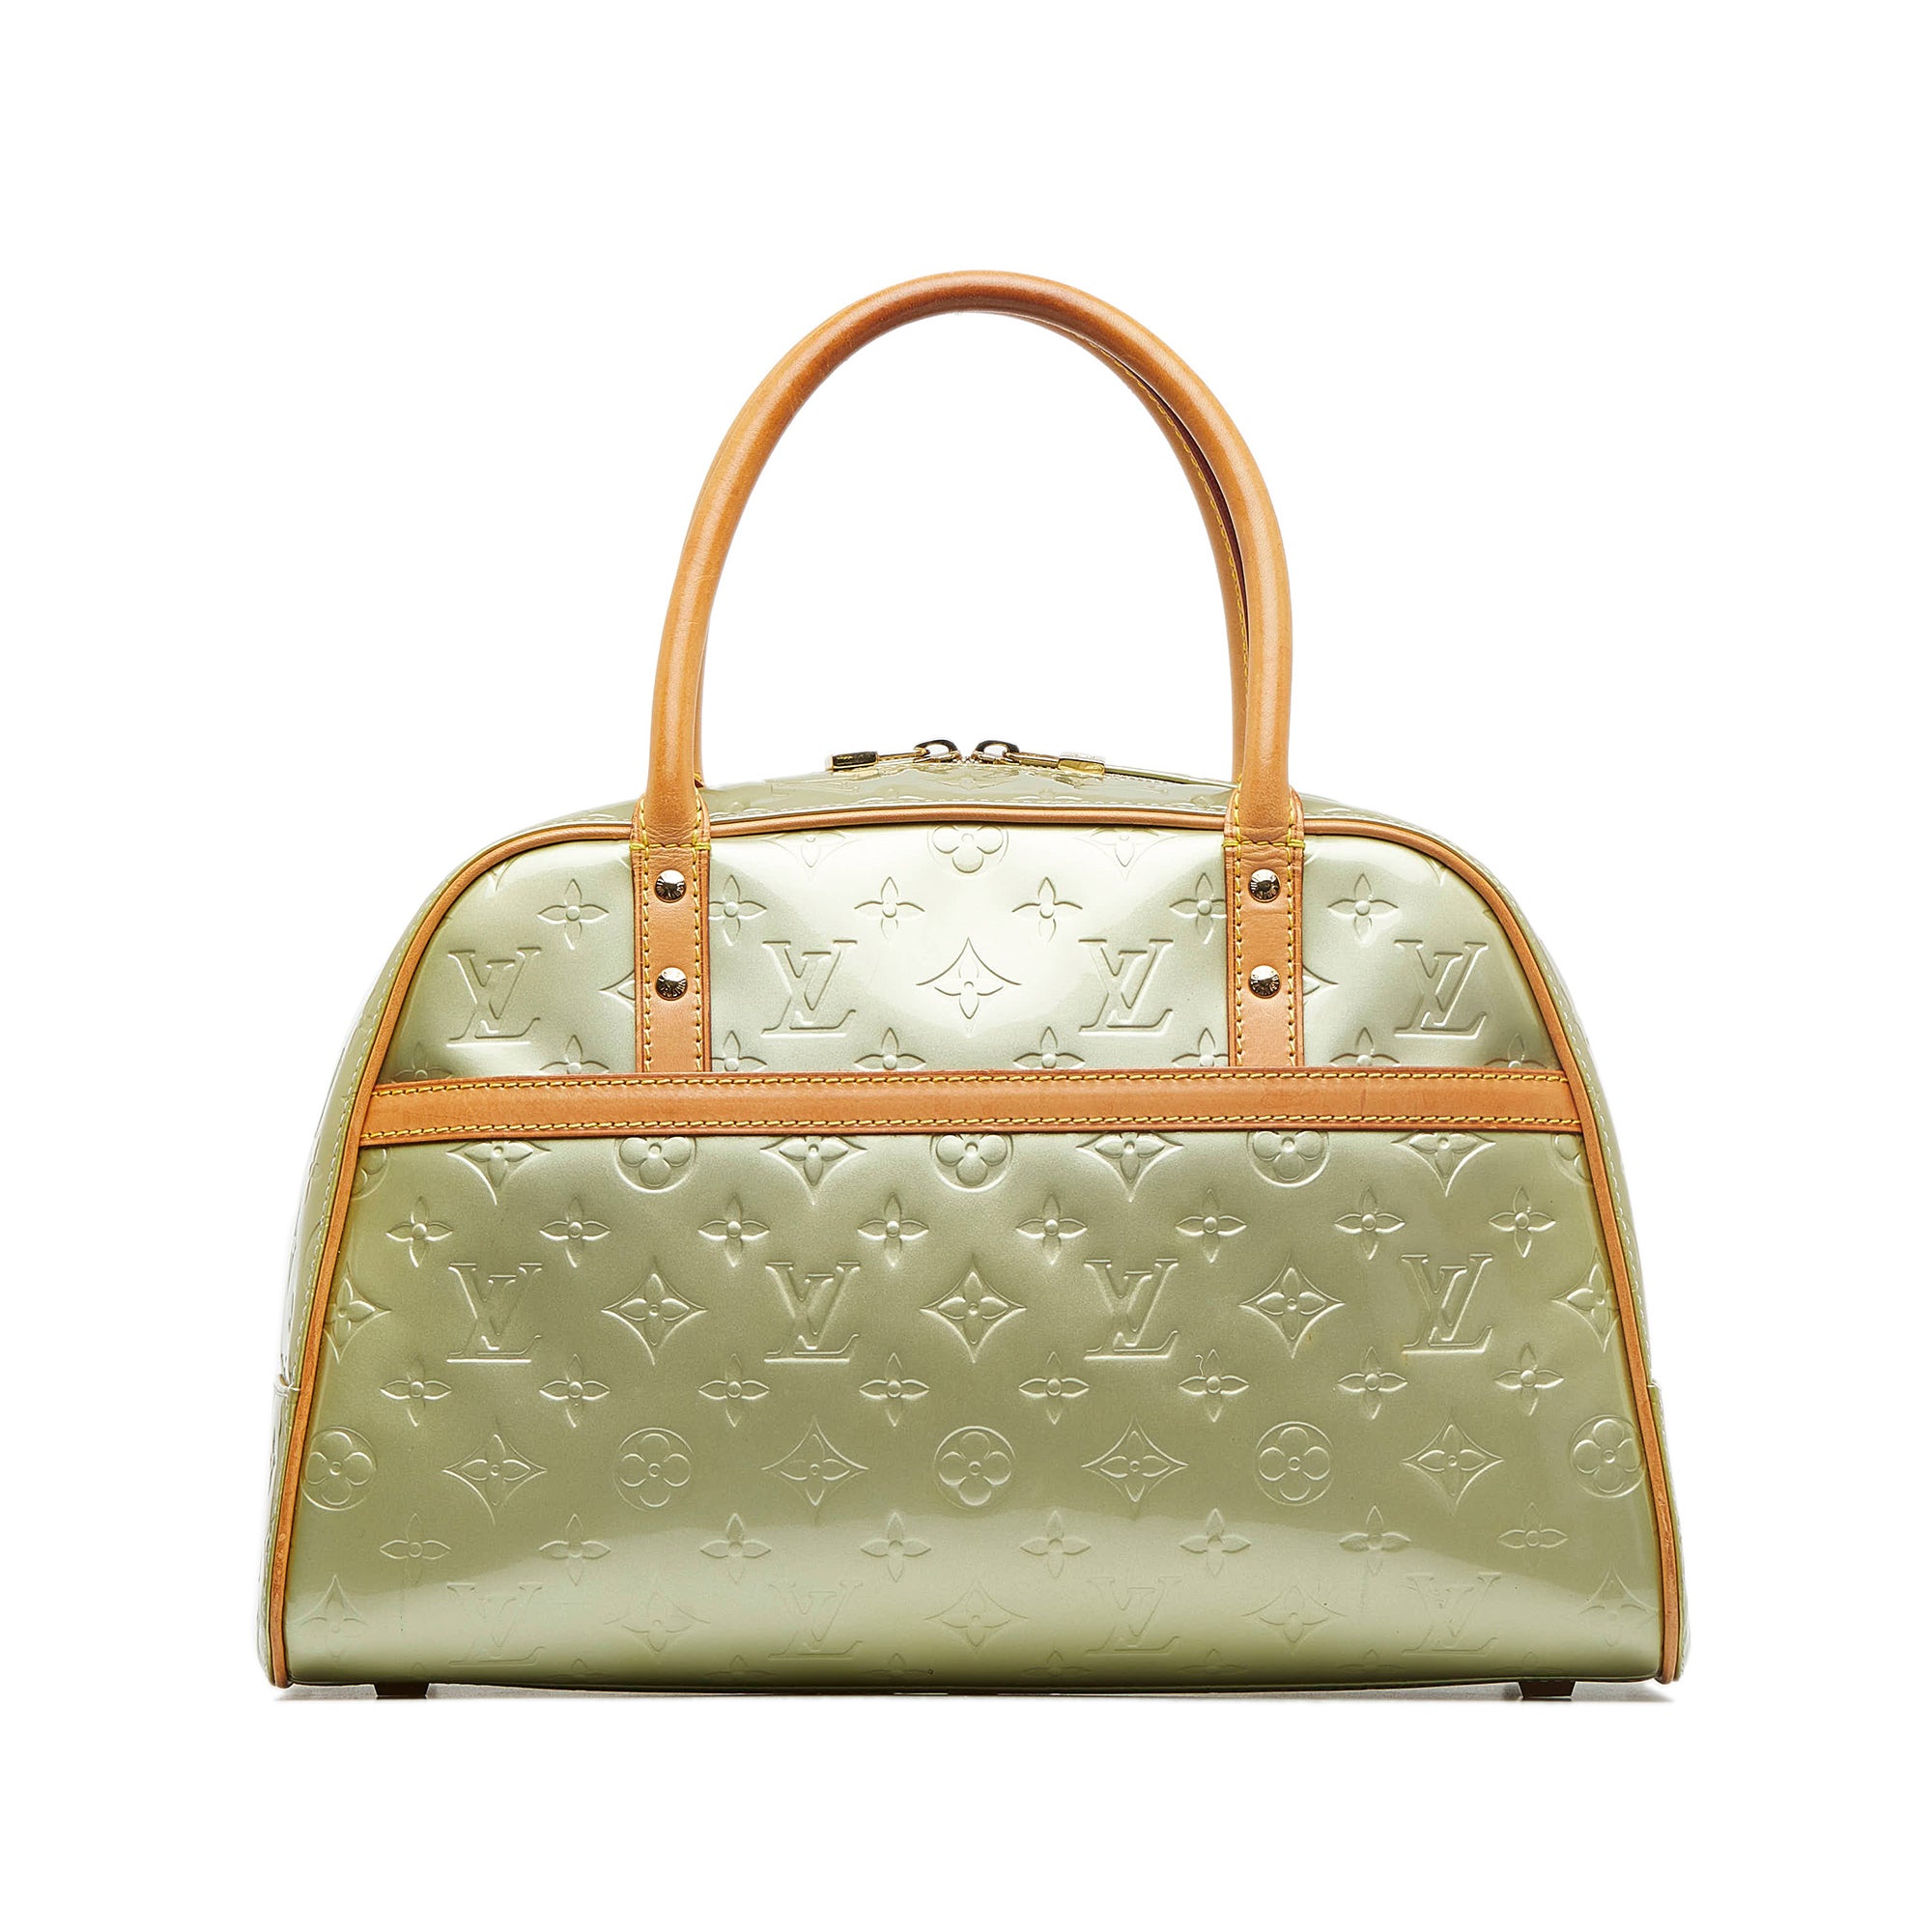 Louis Vuitton, Bags, Louis Vuitton Vernis Tompkins Square Bag